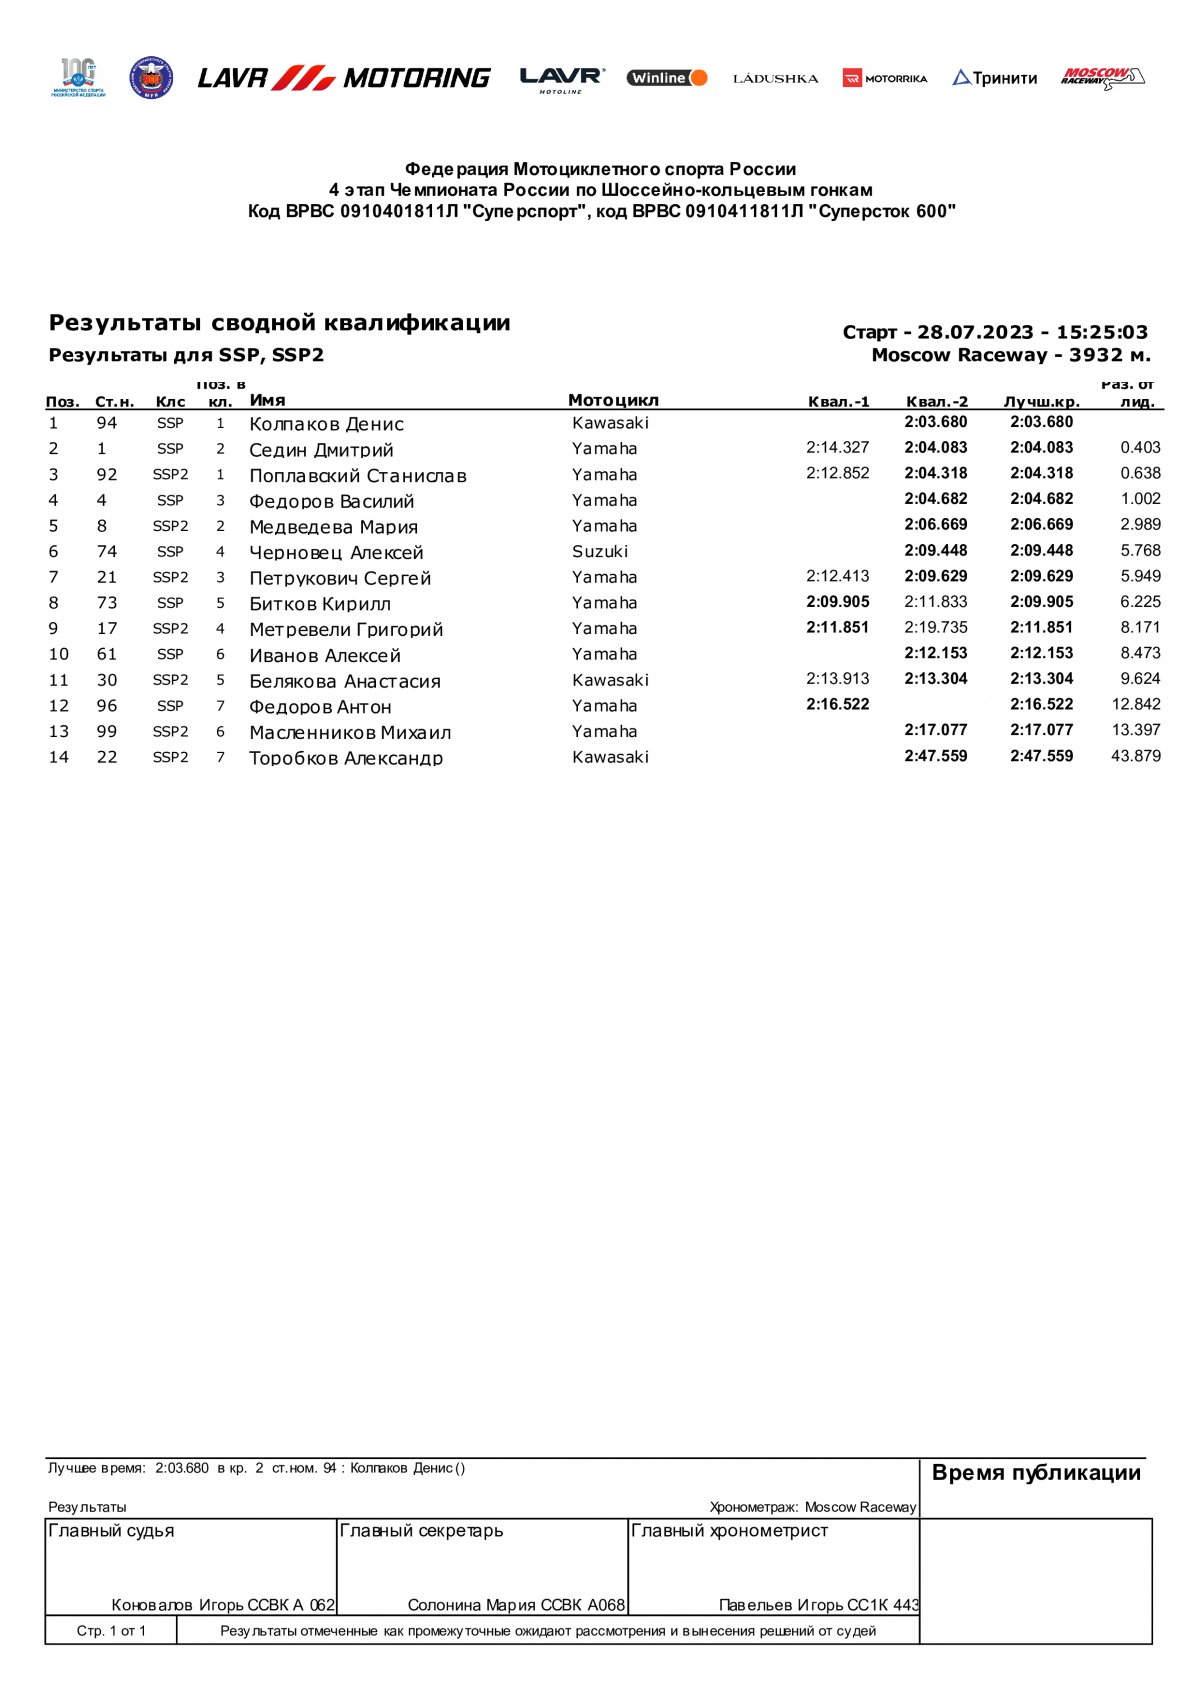 Результаты квалификации SSP/SSP2, Moscow Raceway, 4 этап (28.07.2023)